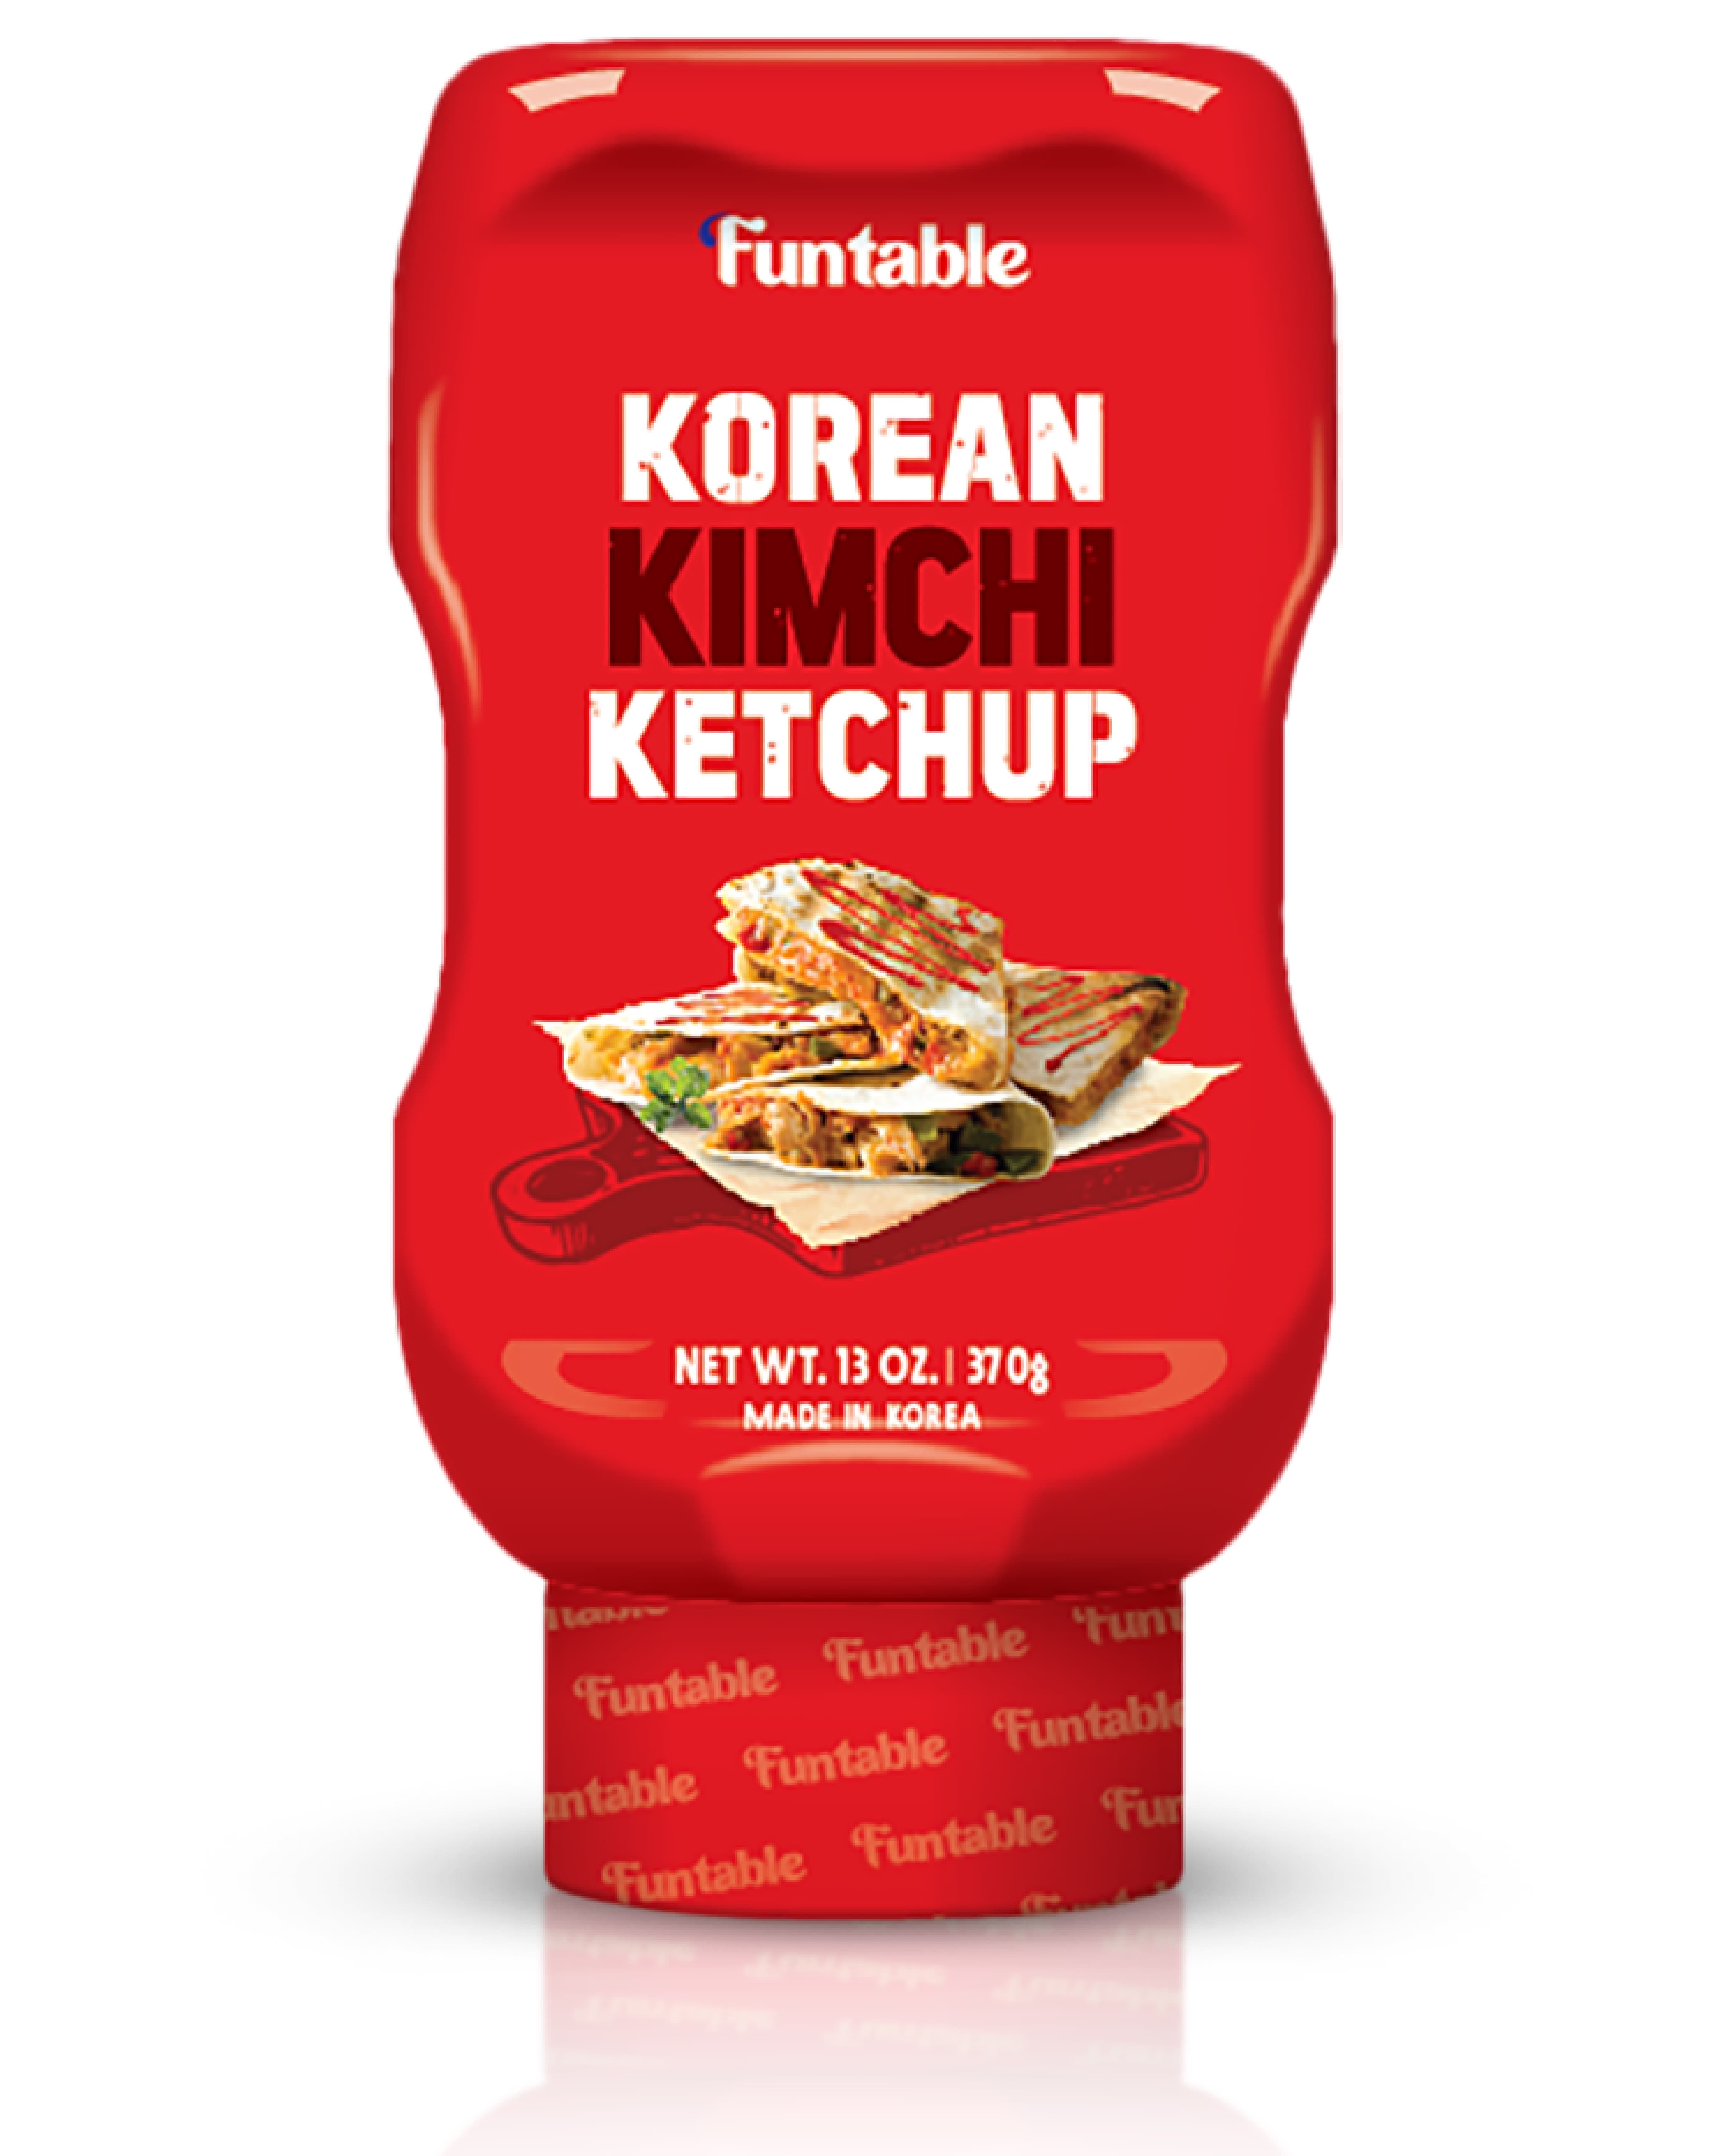 Korean Kimchi Ketchup